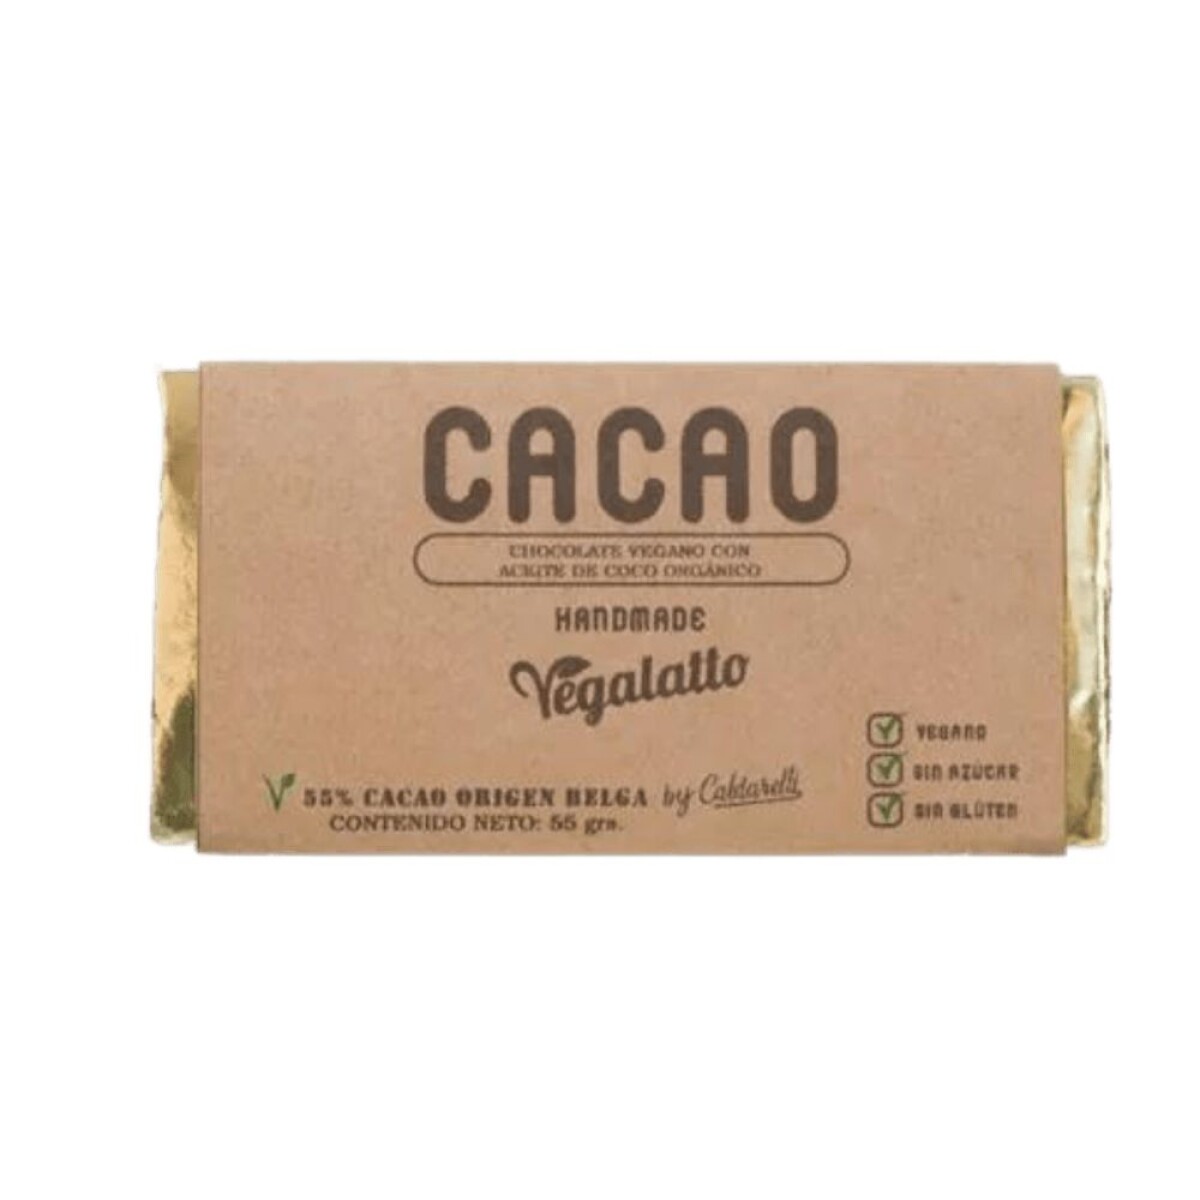 Chocolate de cacao 55g Vegalatto 